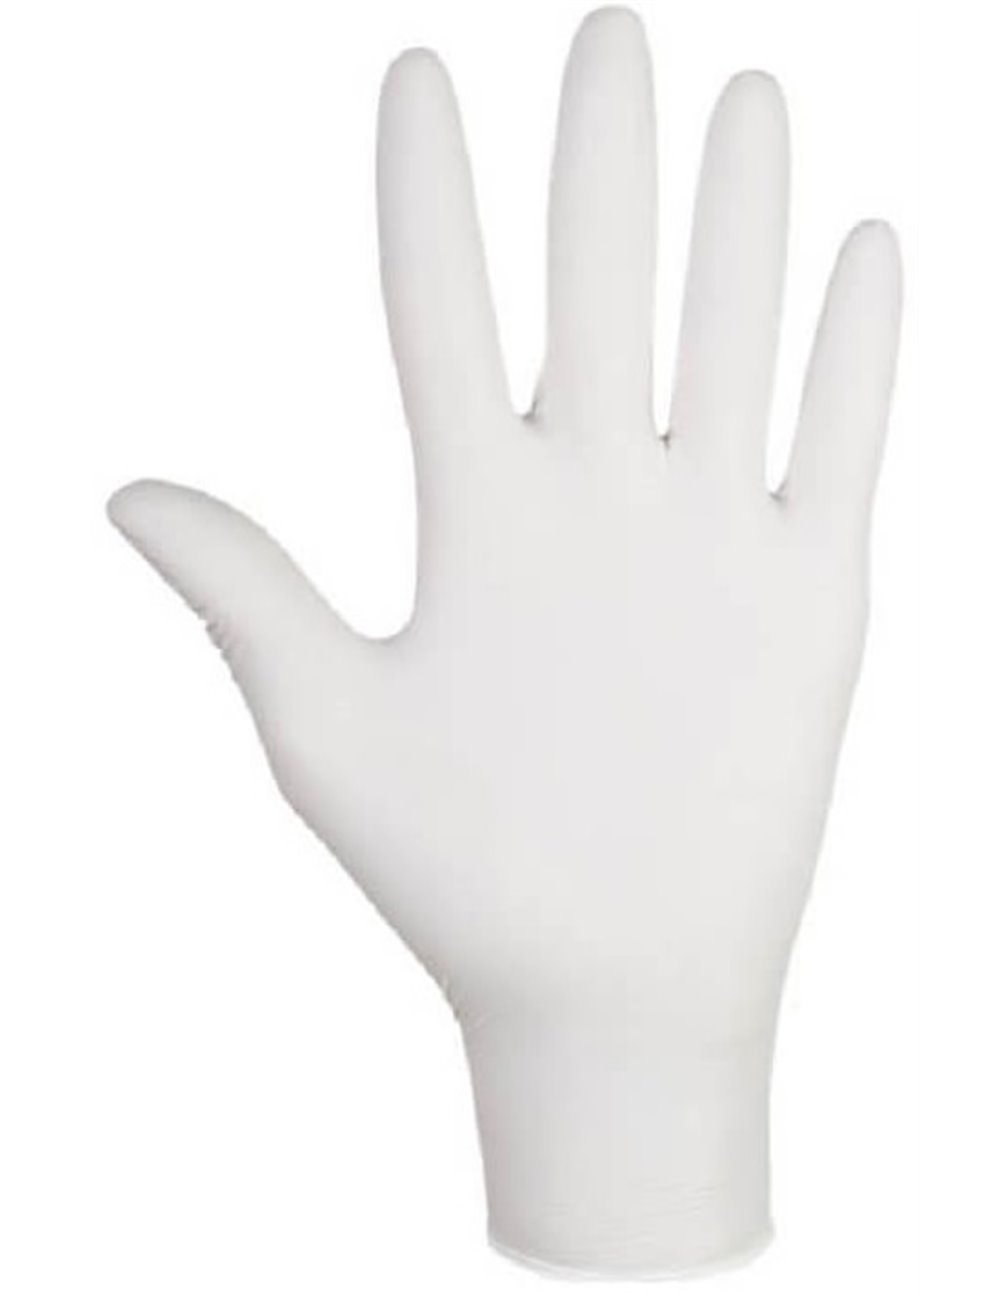 Rękawice Diagnostyczne Jednorazowe, Lateksowe, Pudrowane Białe (rozmiar L) 100 szt